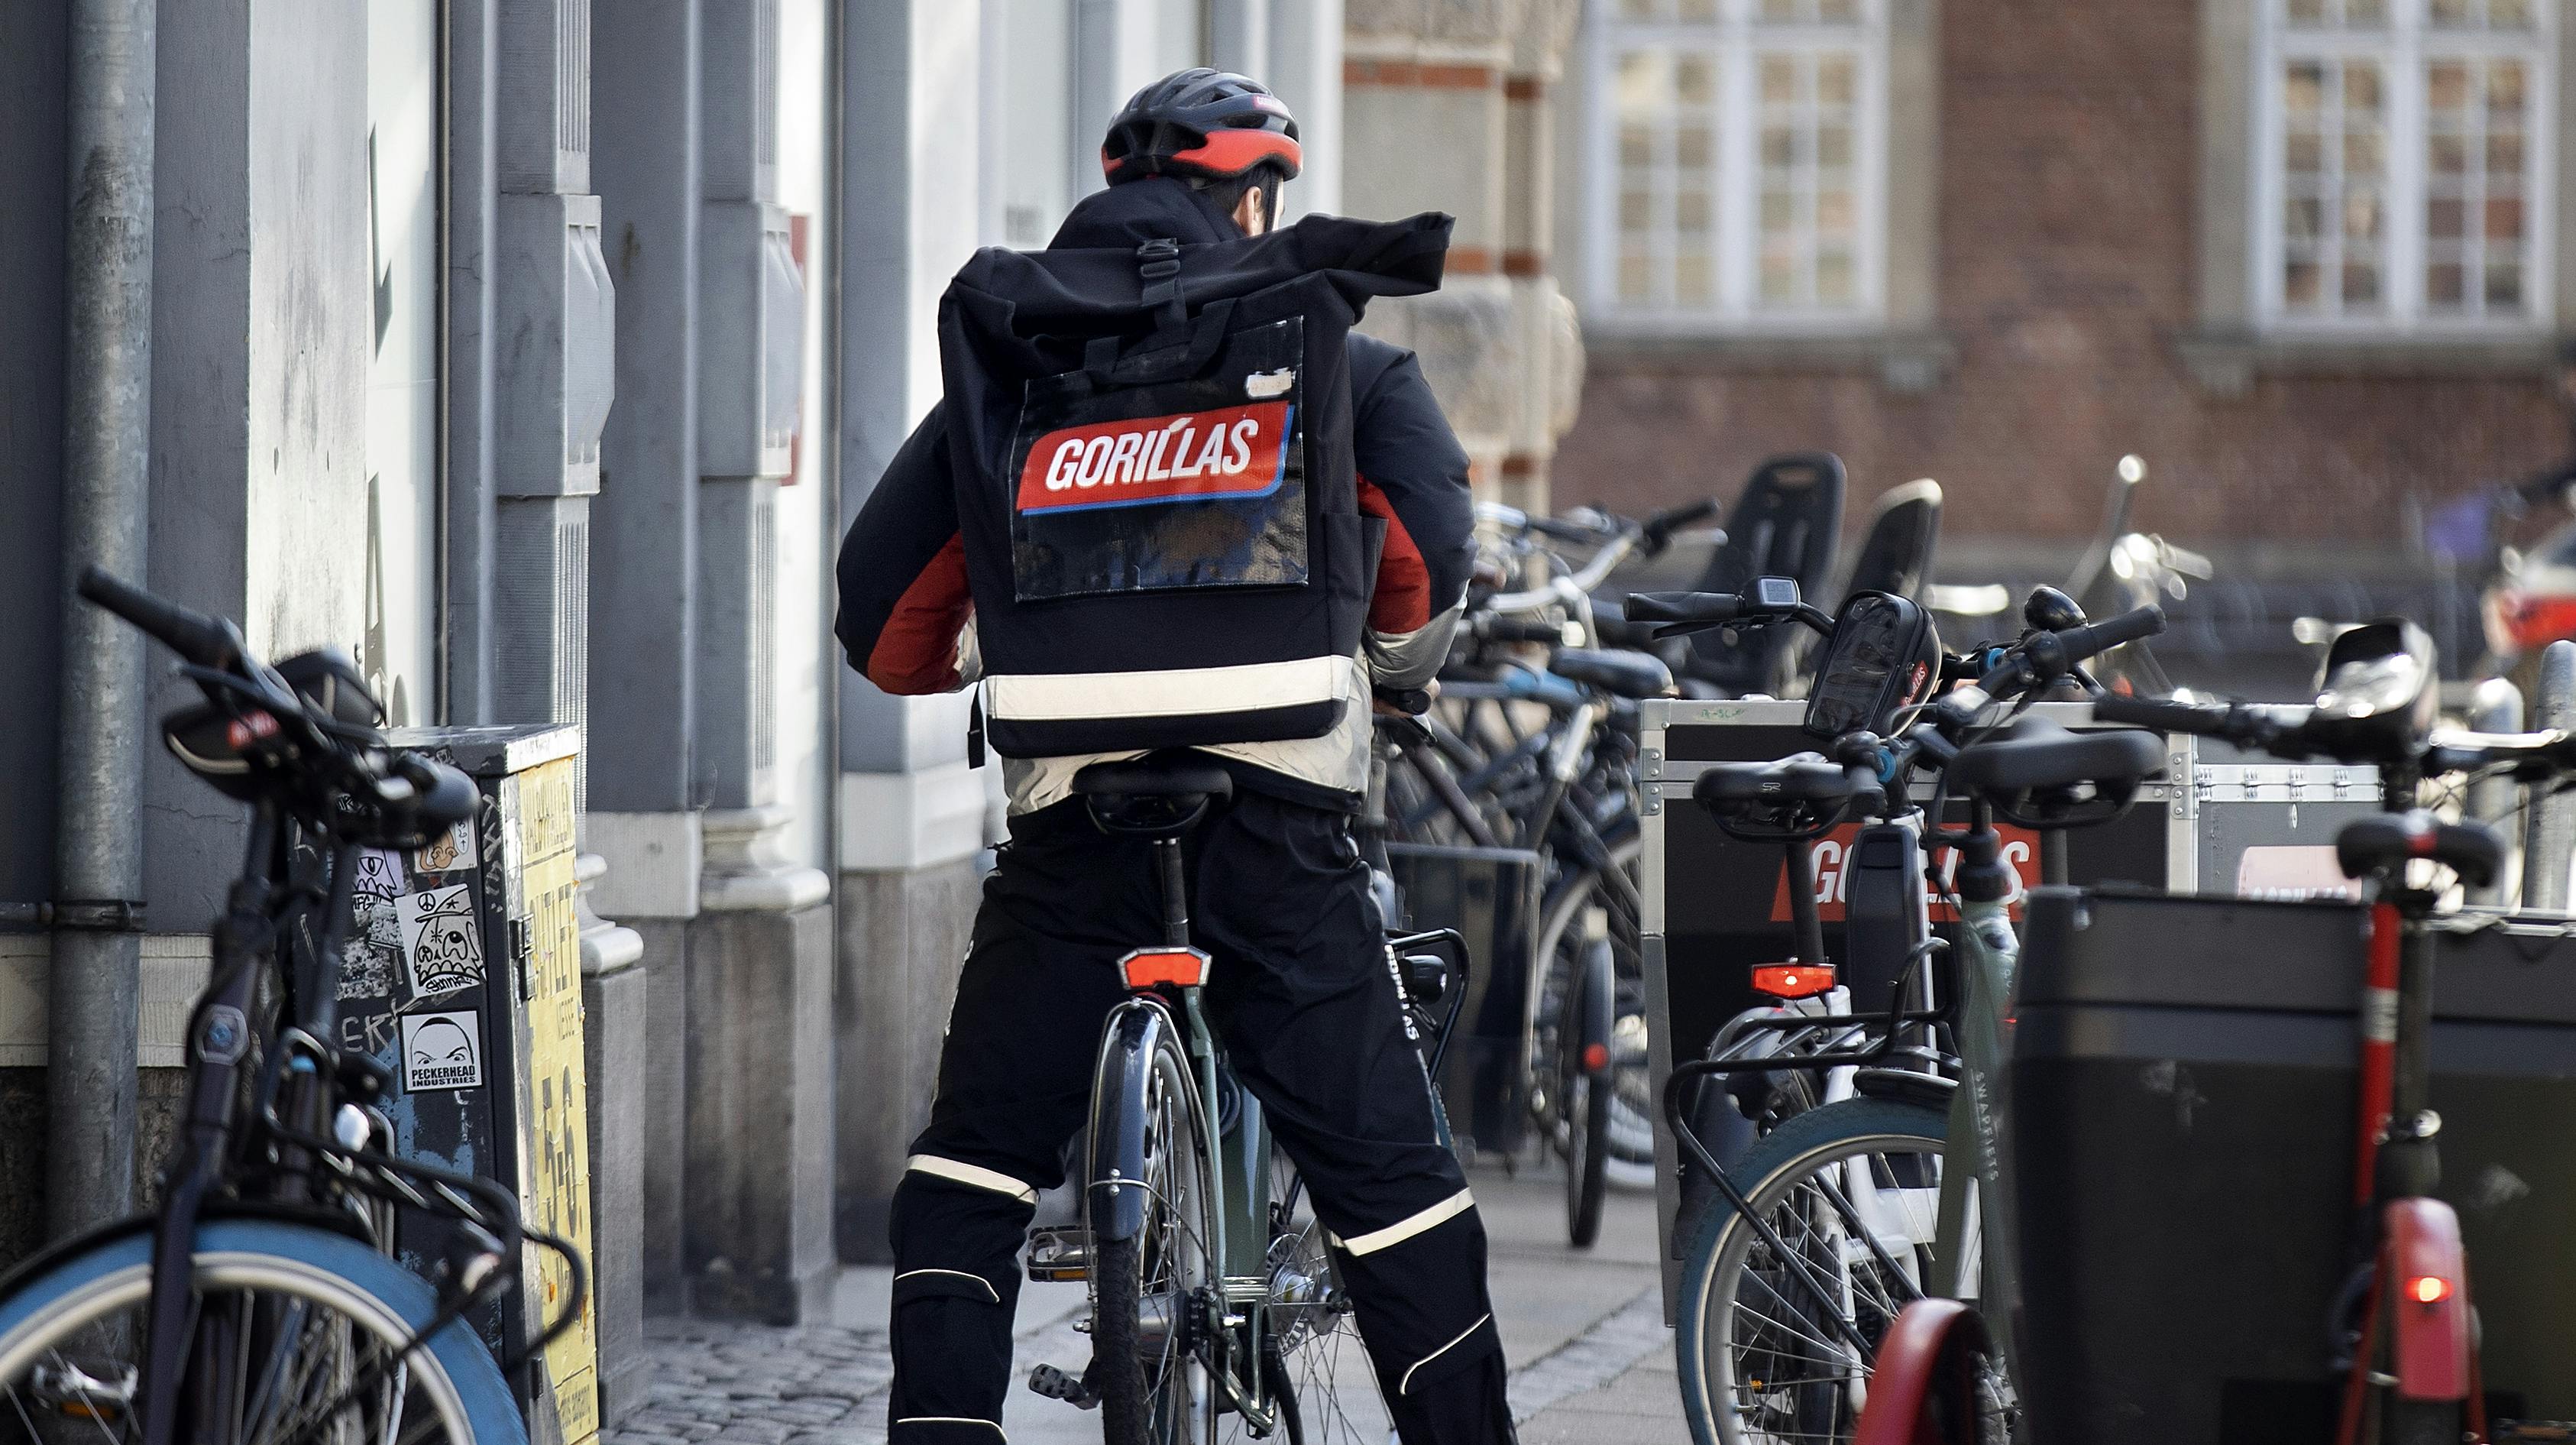 Nu er det slut med cykelbude fra Gorillas i Danmark.